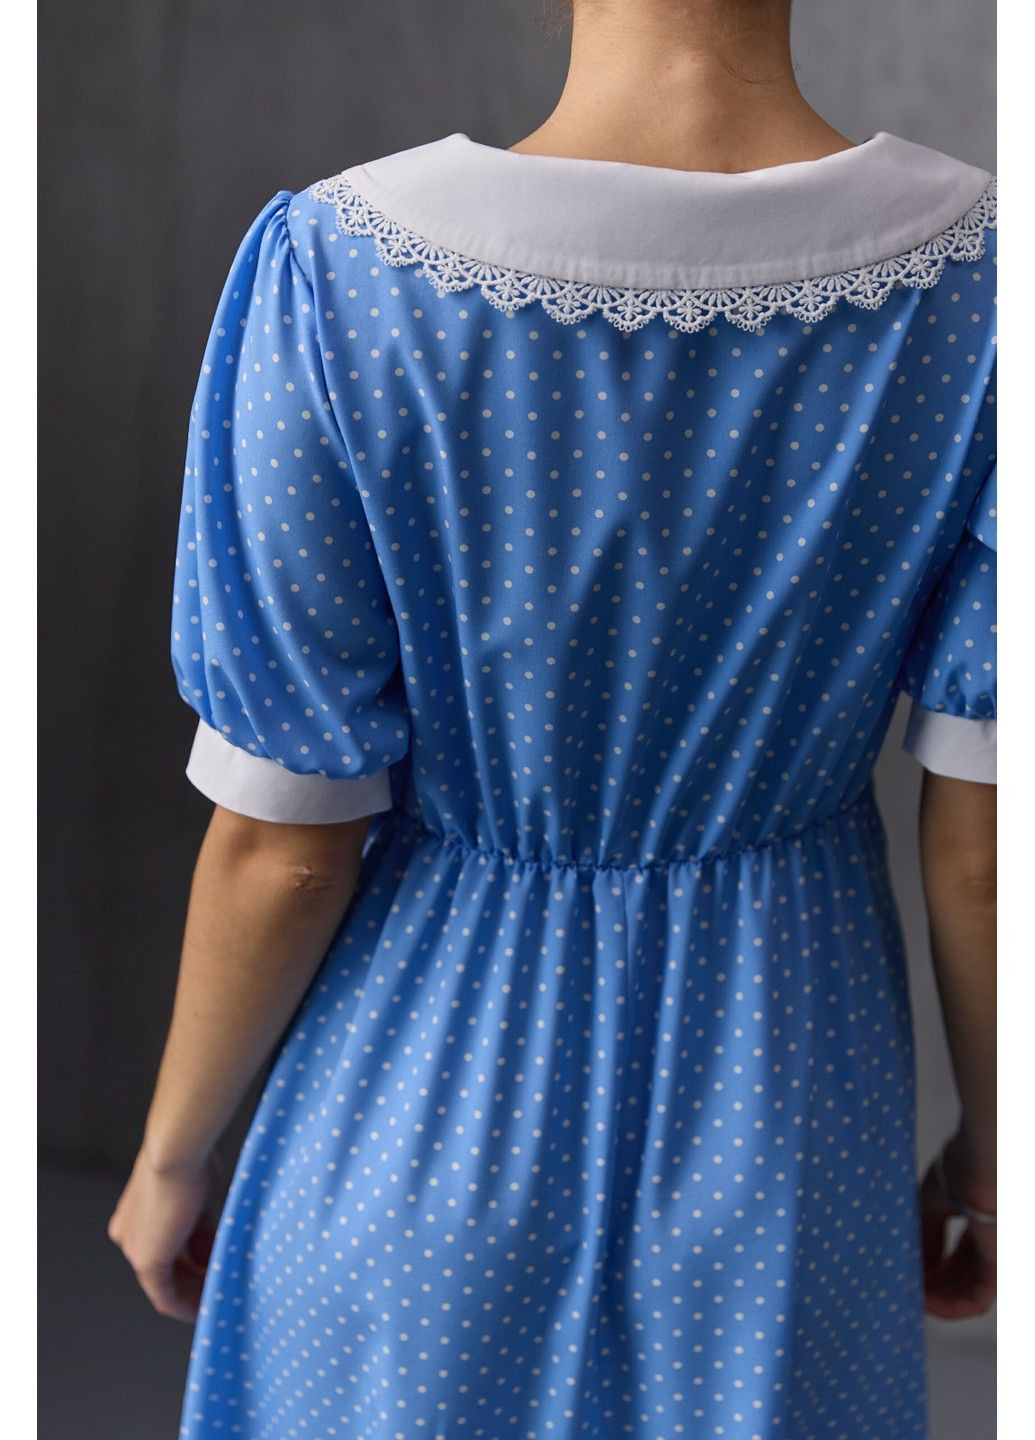 Голубое платье меди с воротничком в принт горох голубое Bessa